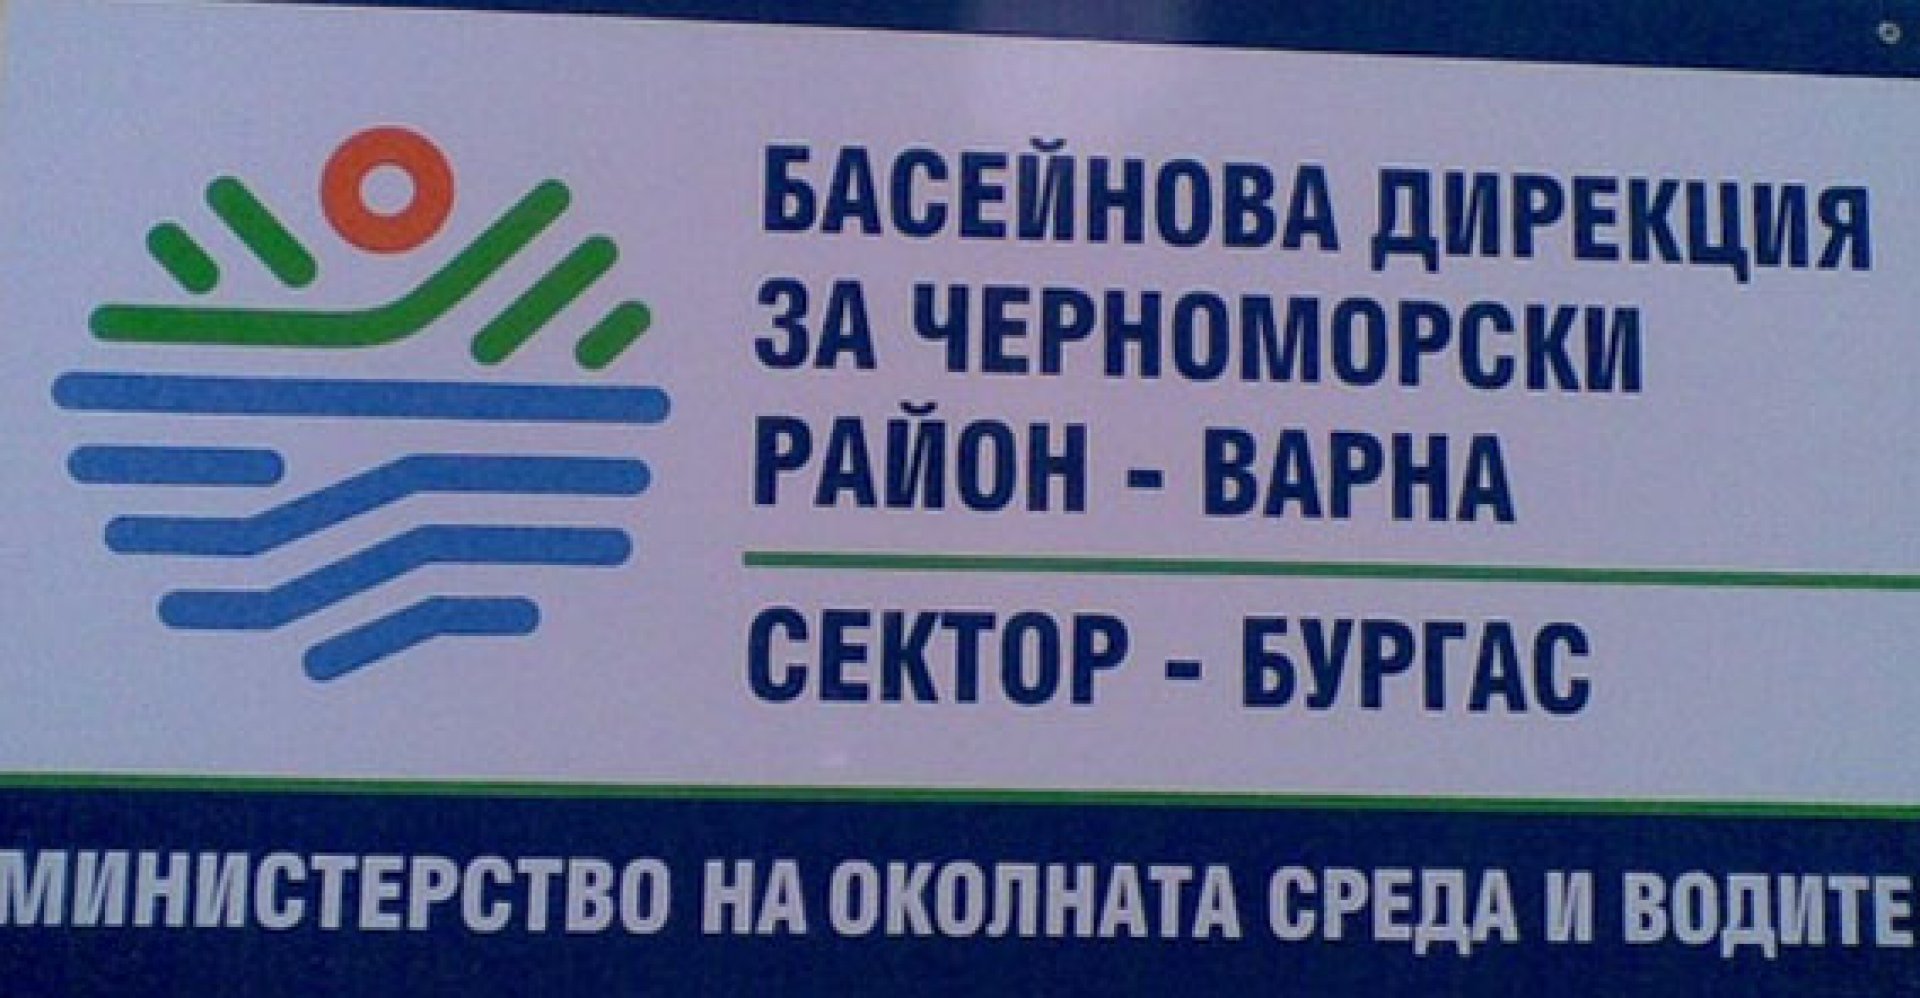 Басейнова дирекция с допълнителни мерки за обслужване по електронен път - E-Burgas.com